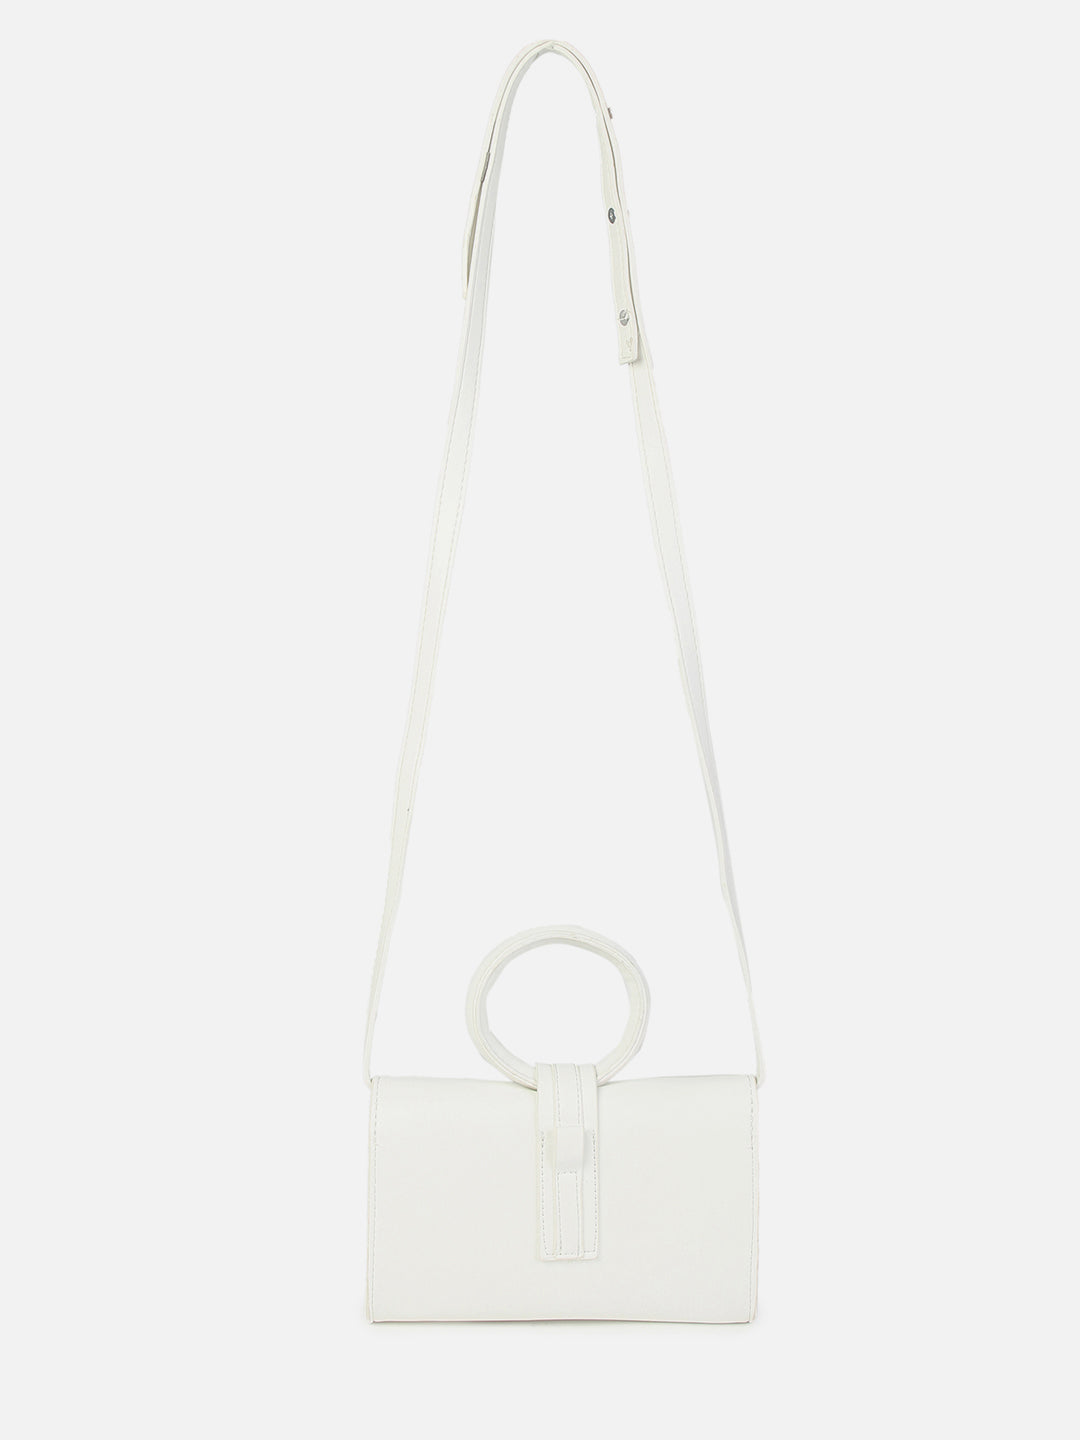 Rosetta White Mini Bag